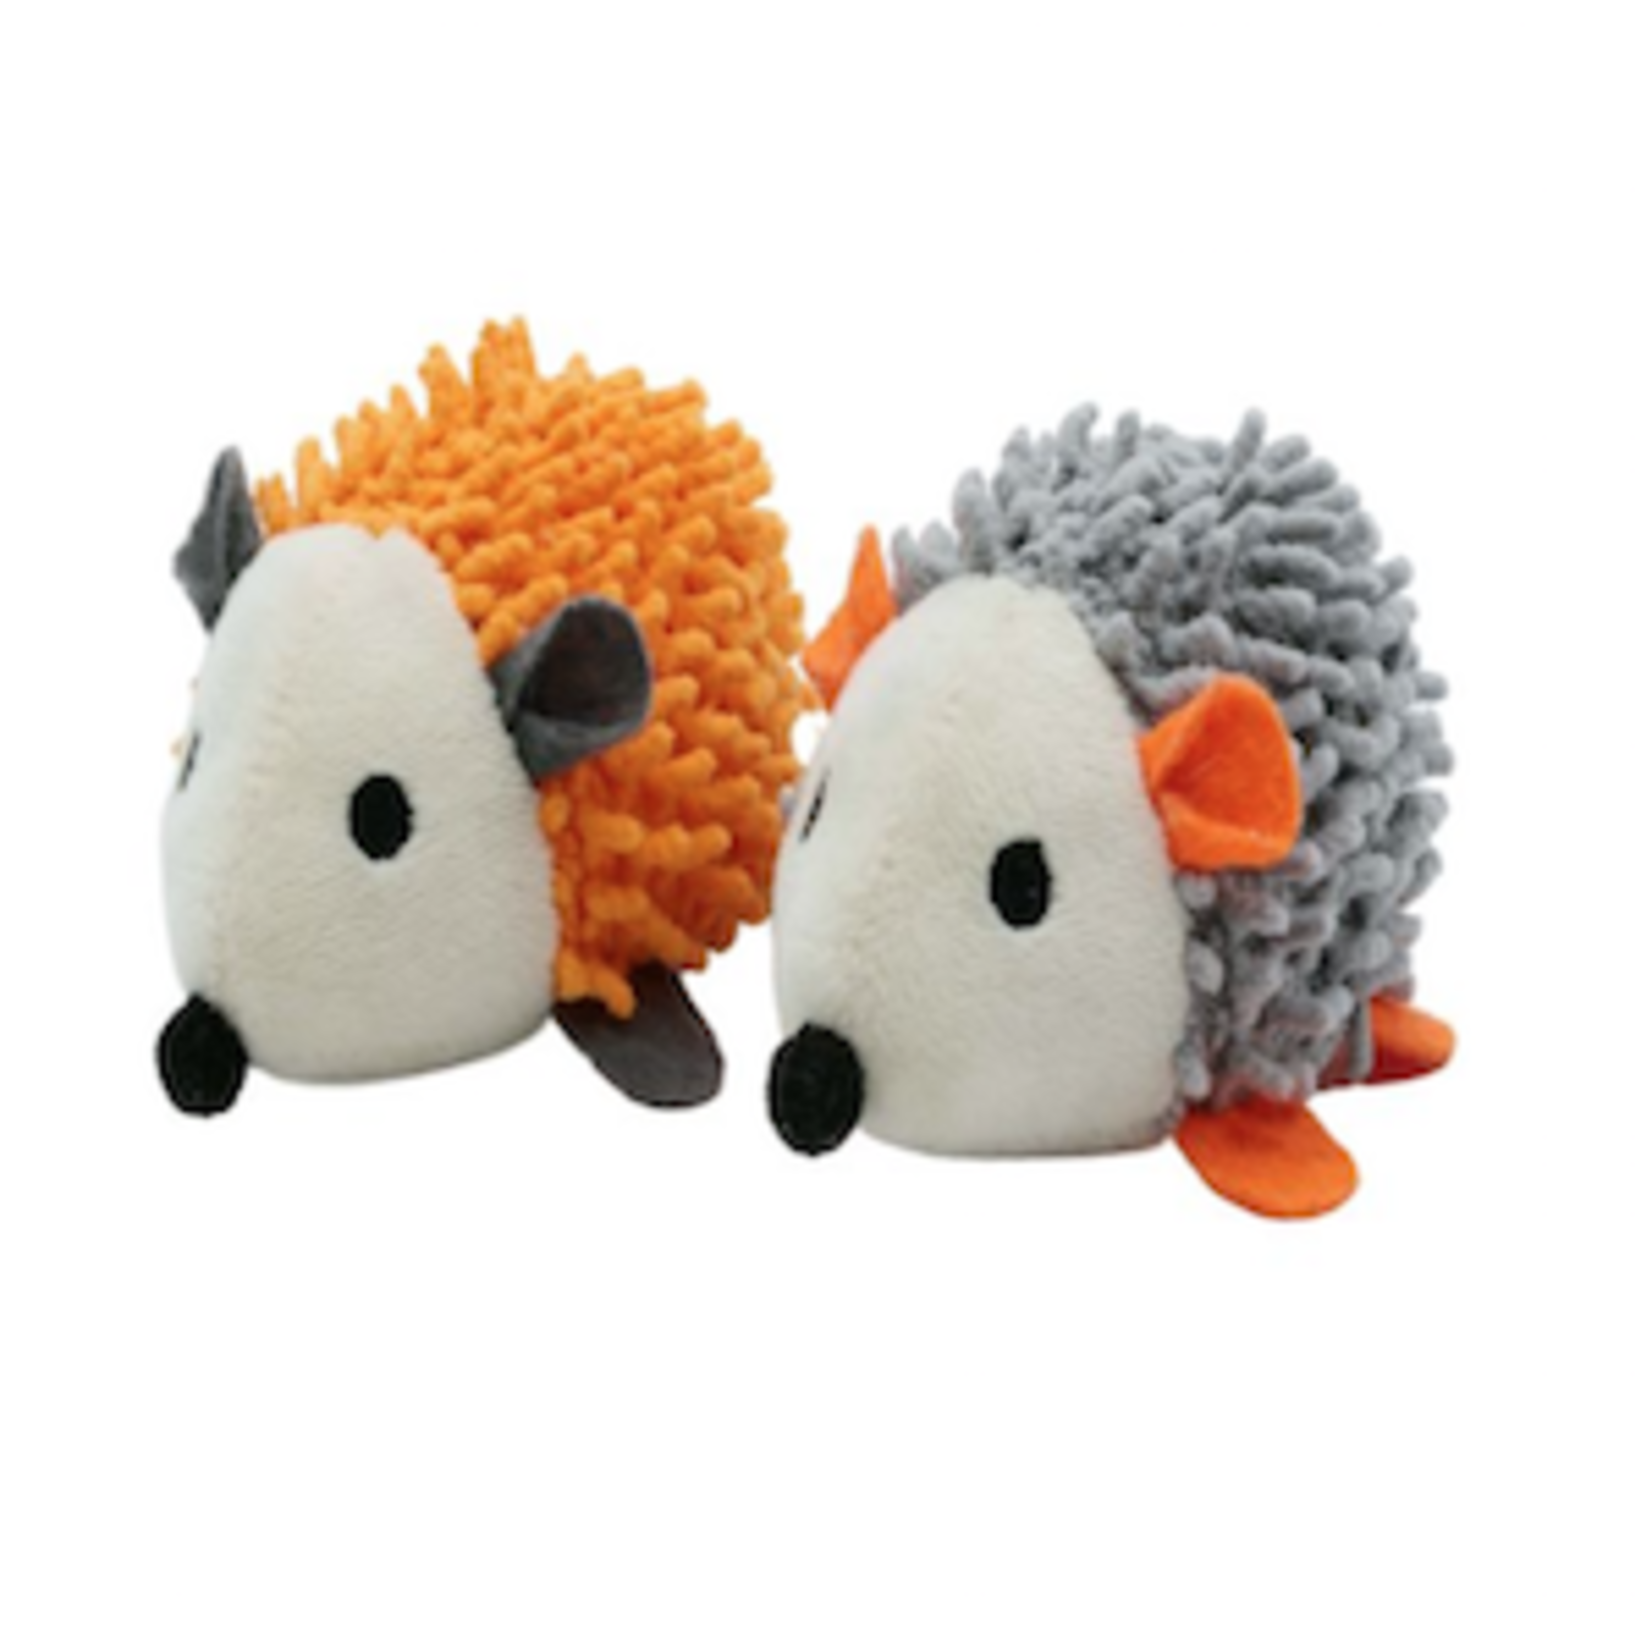 BUD-Z Bud-Z Hedgehogs Duo Orange And Grey Cat